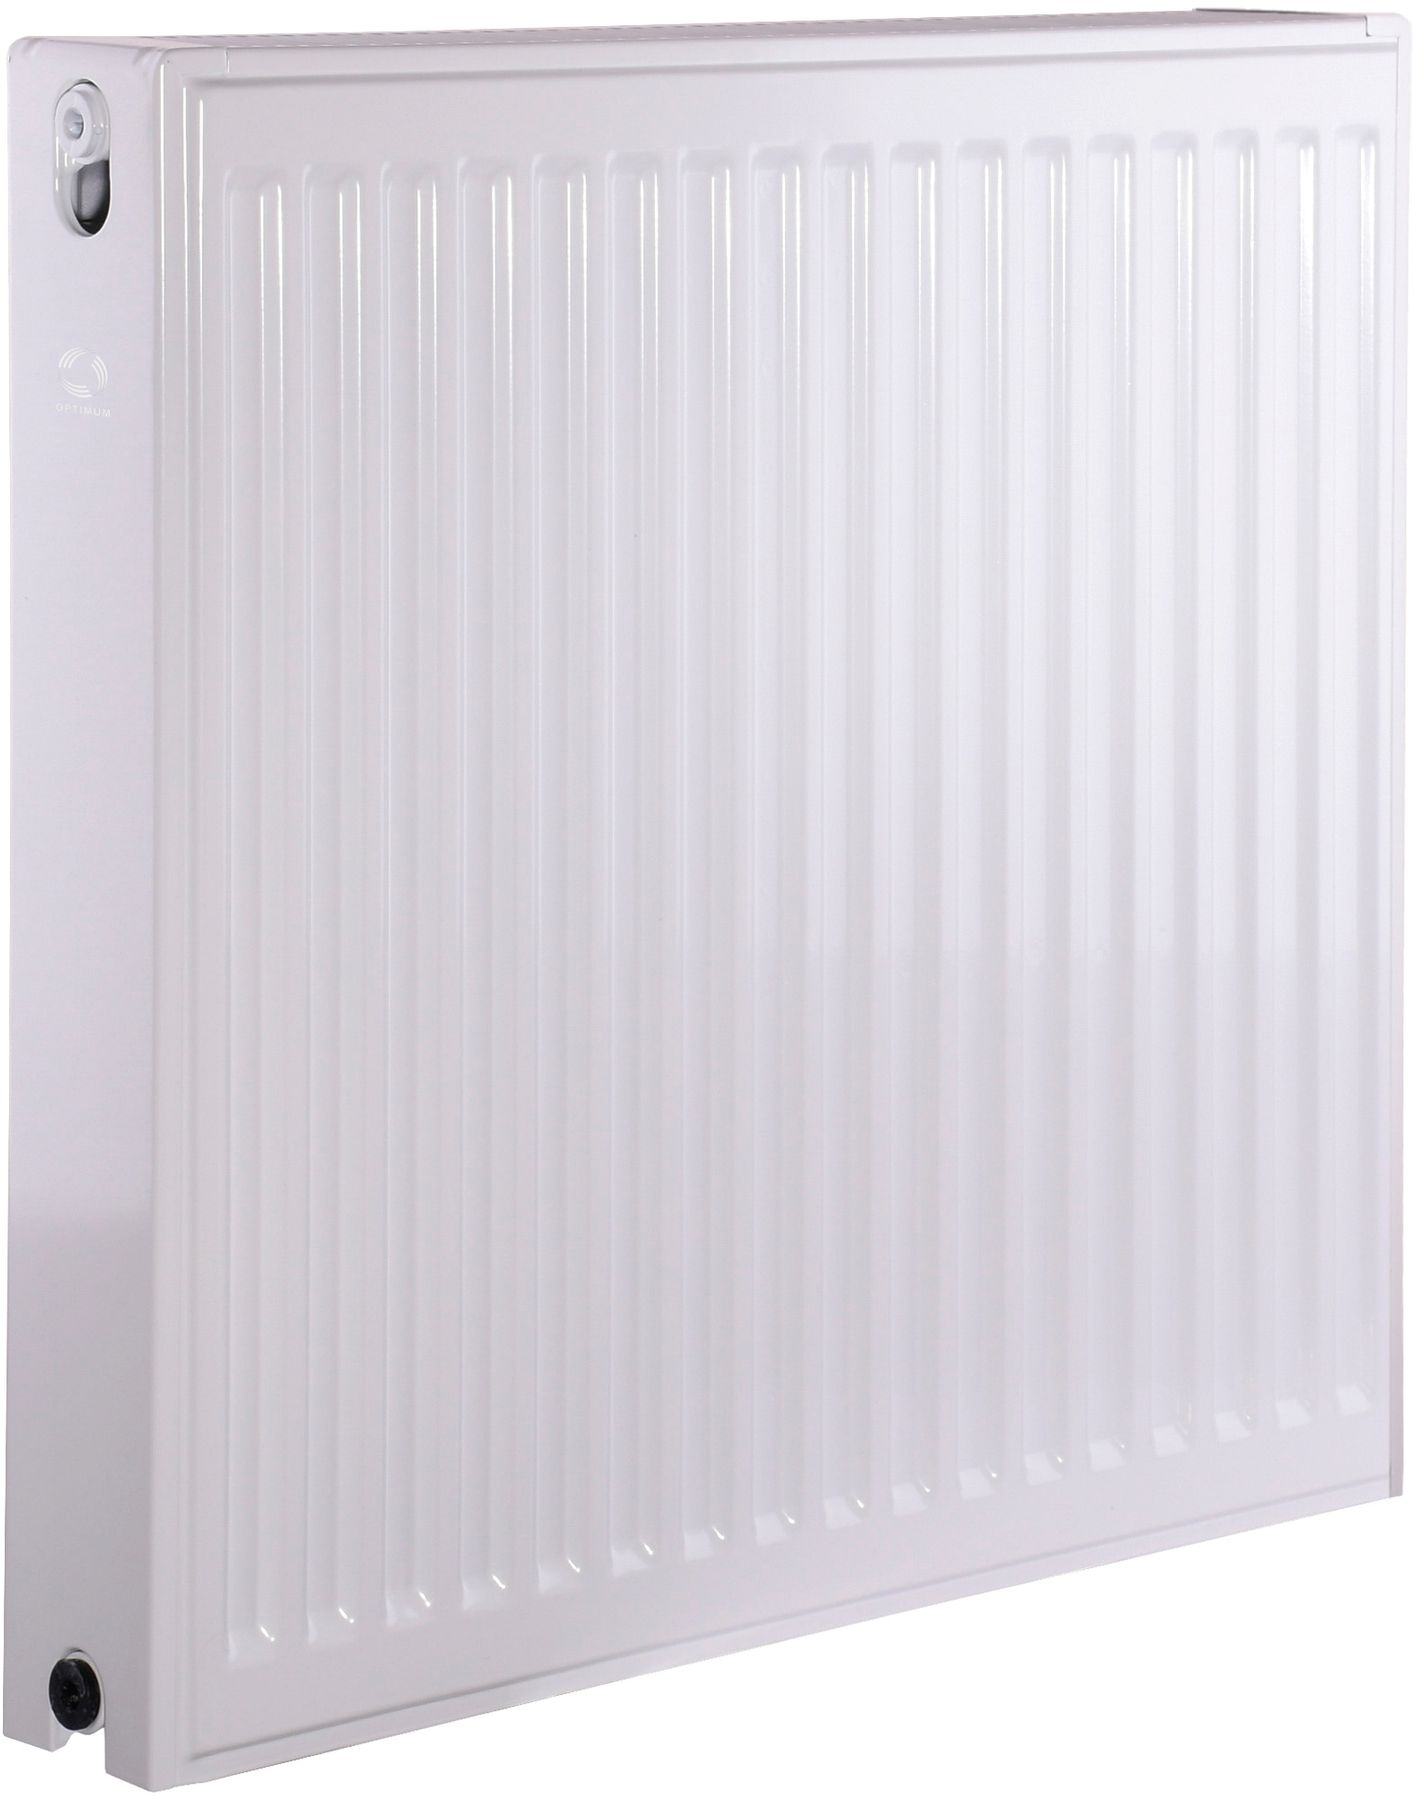 Радиатор для отопления Optimum 22 бок 600x600